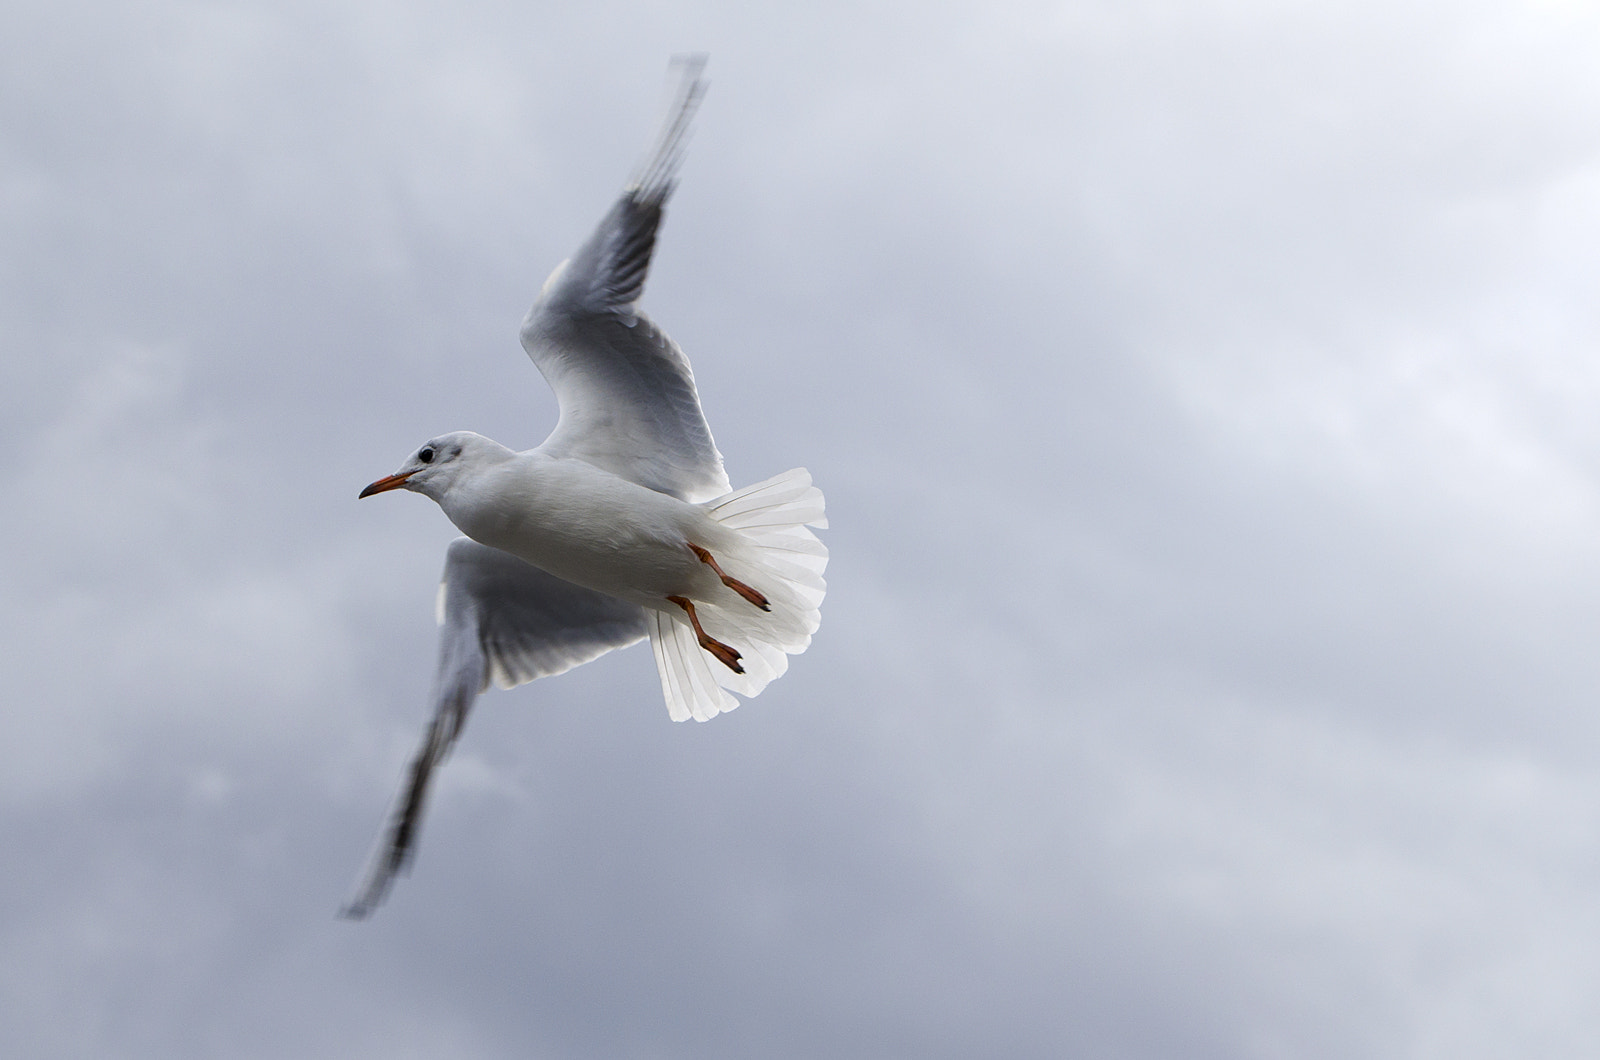 AF Zoom-Nikkor 28-70mm f/3.5-4.5D sample photo. Flying seagull photography